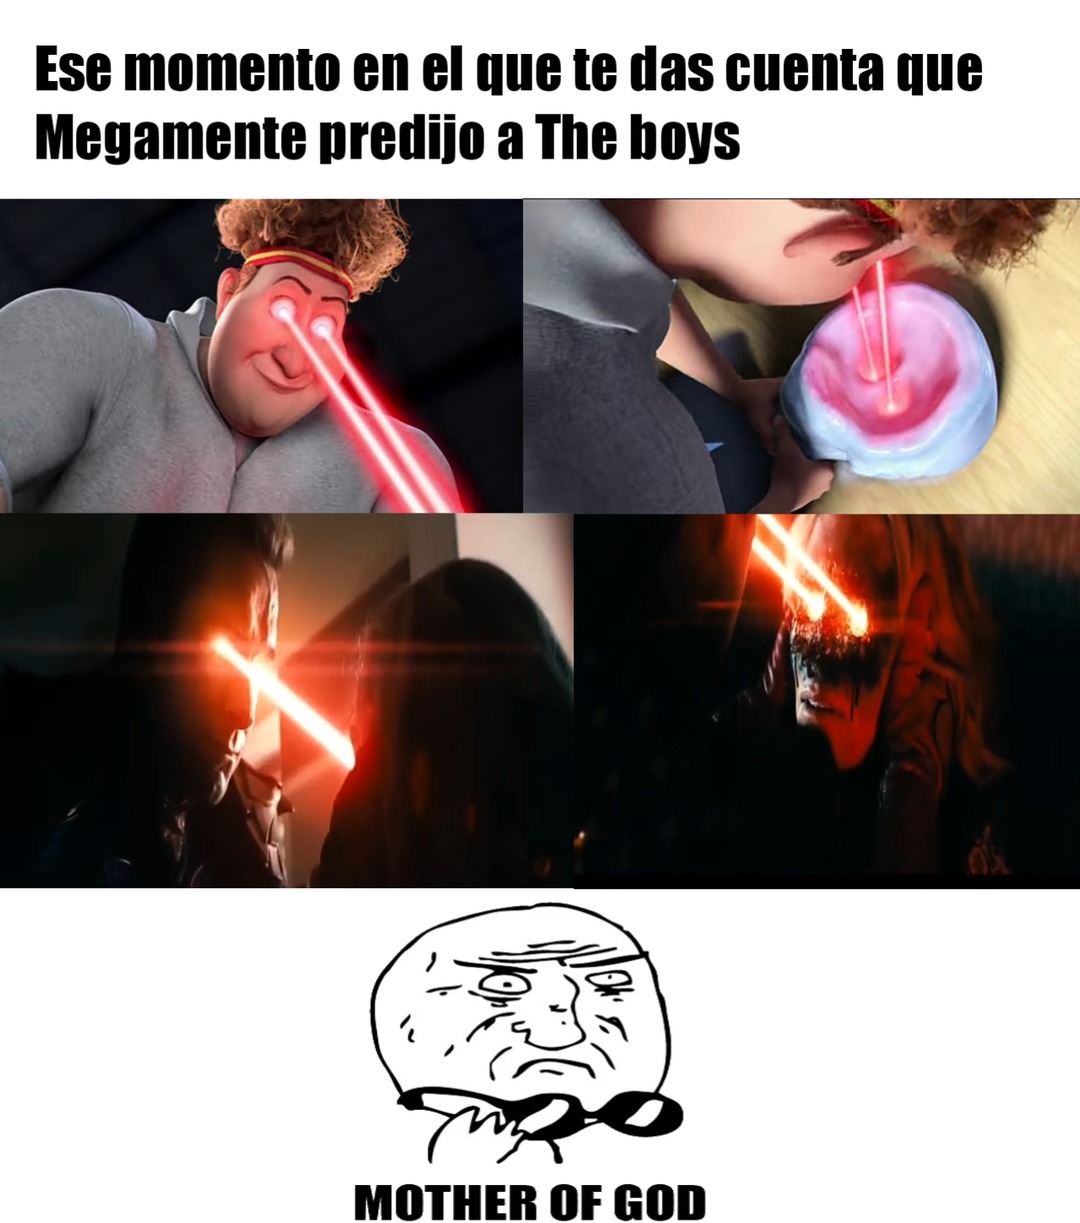 Meme de Megamente y The Boys